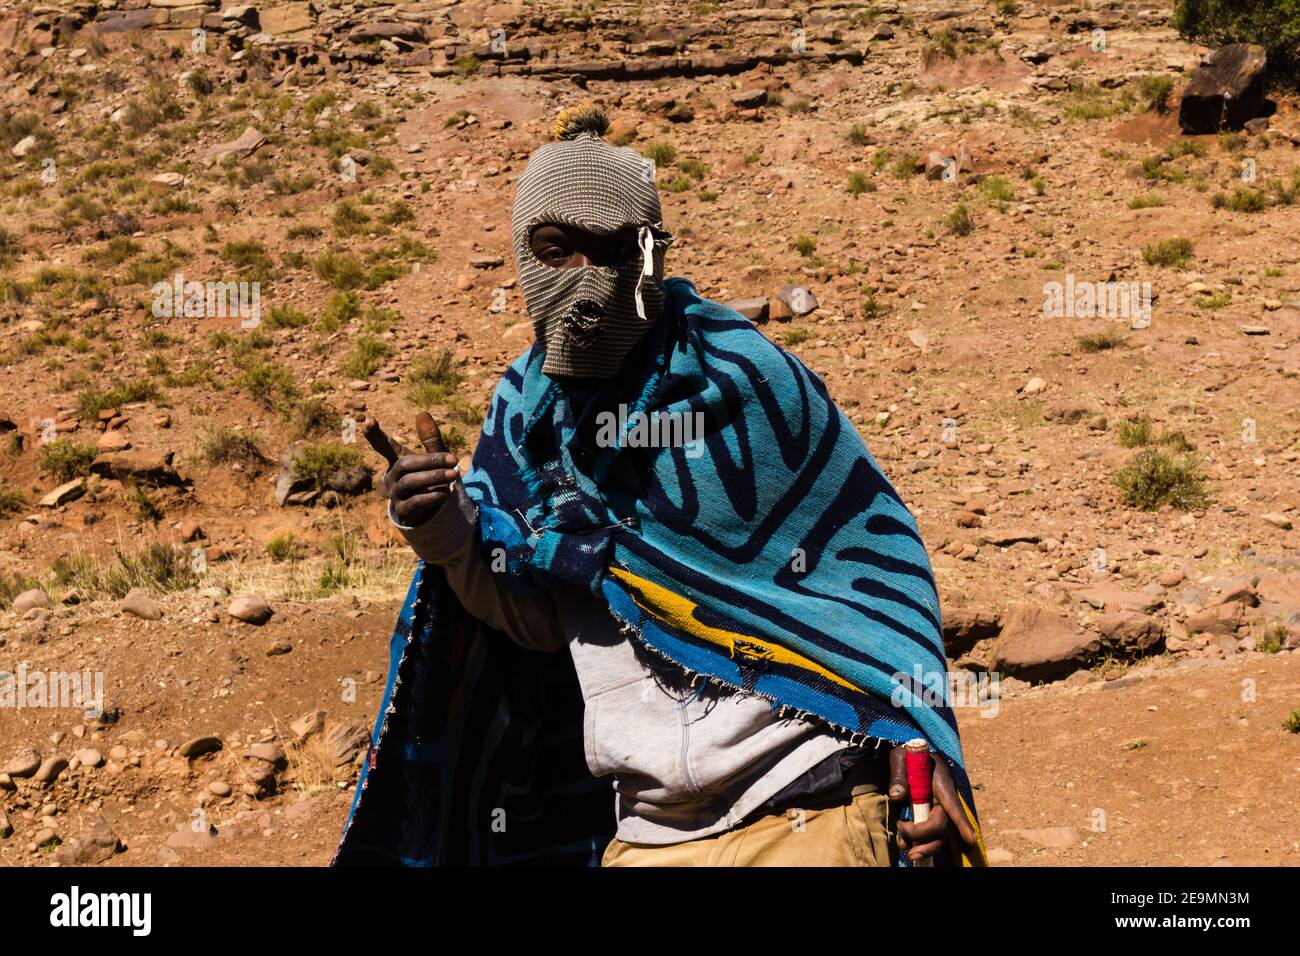 Berger des Basotho près de Malealea, Lesotho, Afrique Banque D'Images